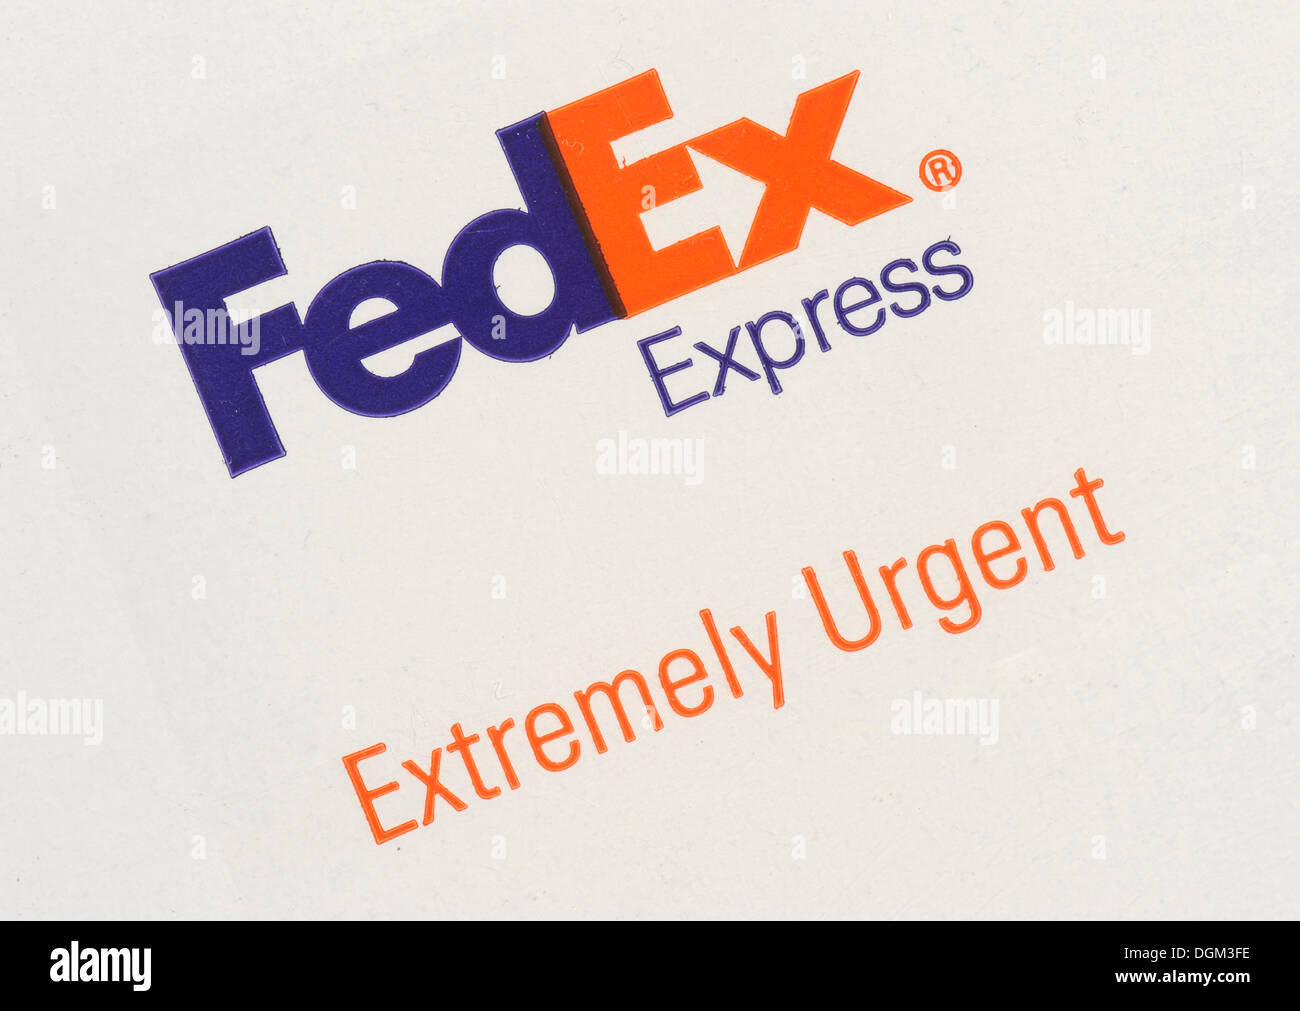 FEDEX Epress envelope with logo, extremely urgent Stock Photo